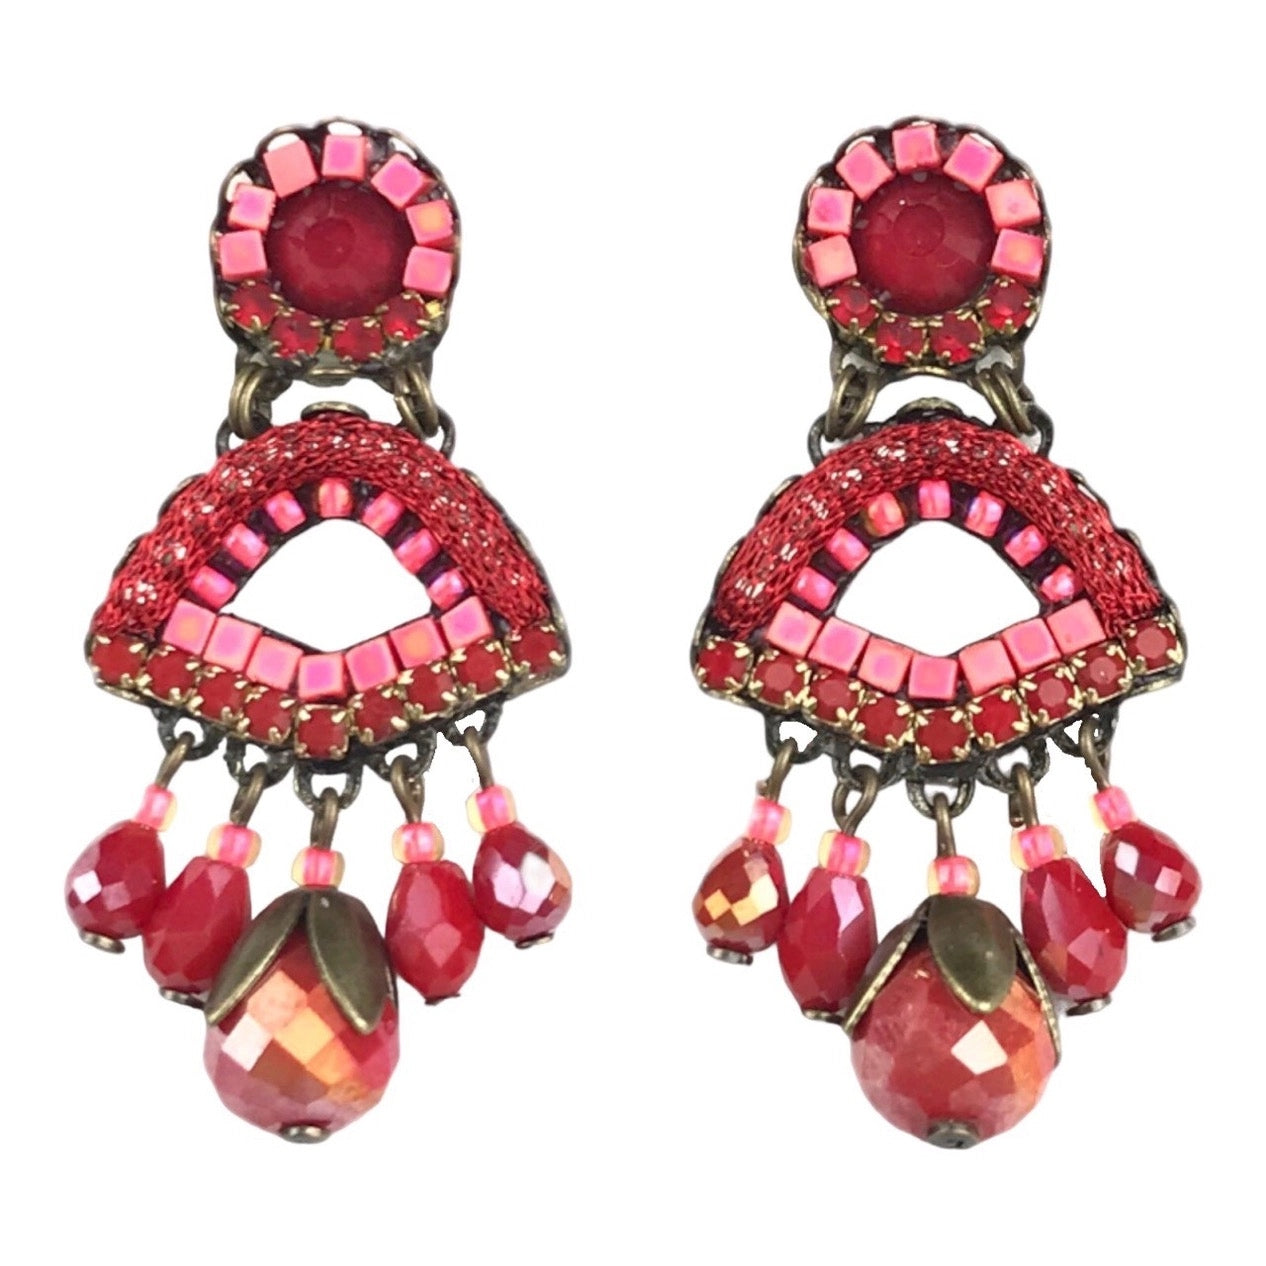 Melizi Jewelry Fan Crystal Earrings - Multiple Colors